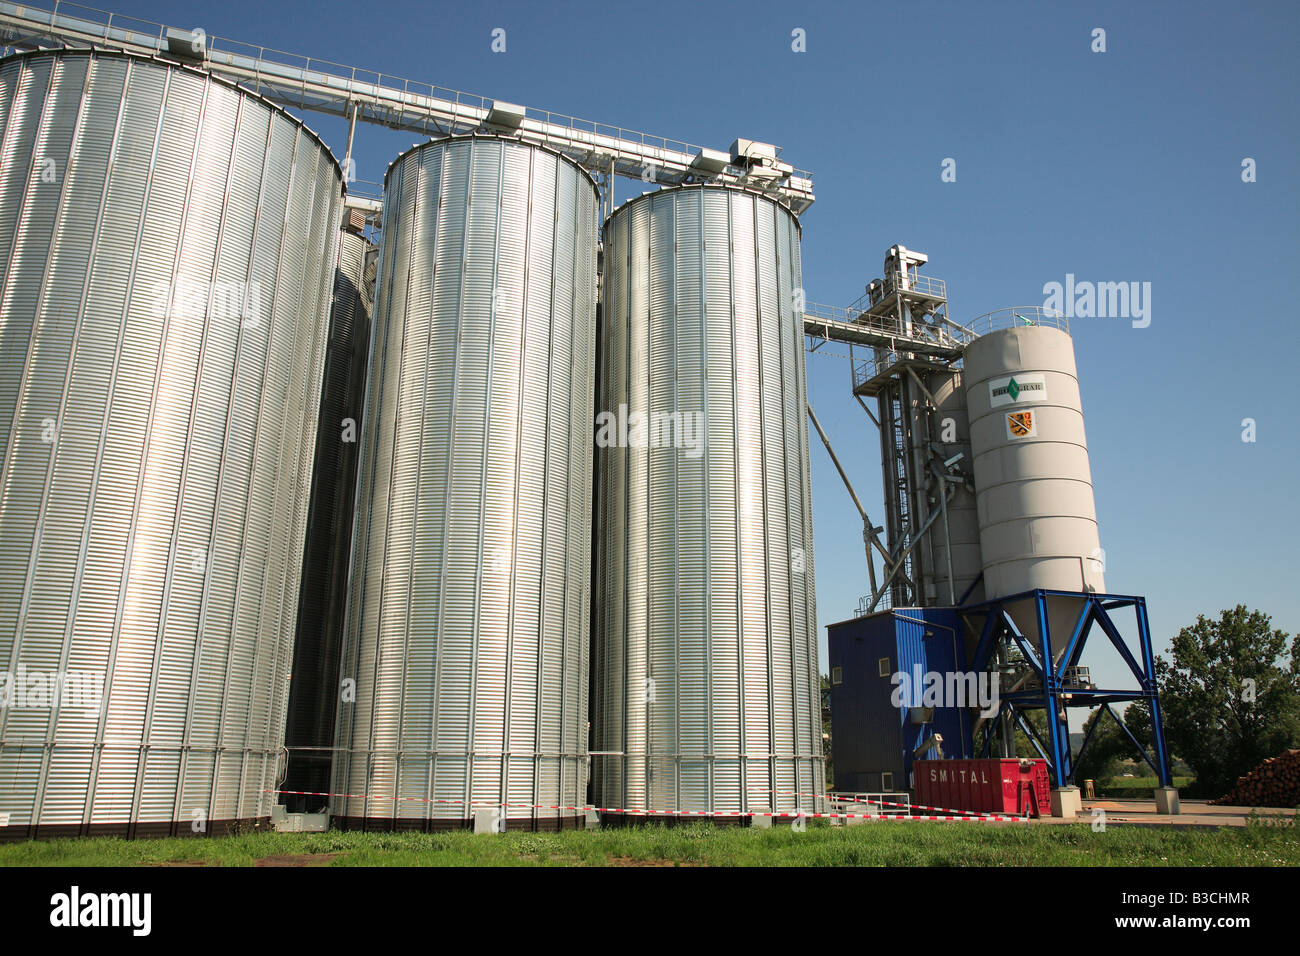 picture of a grain silo